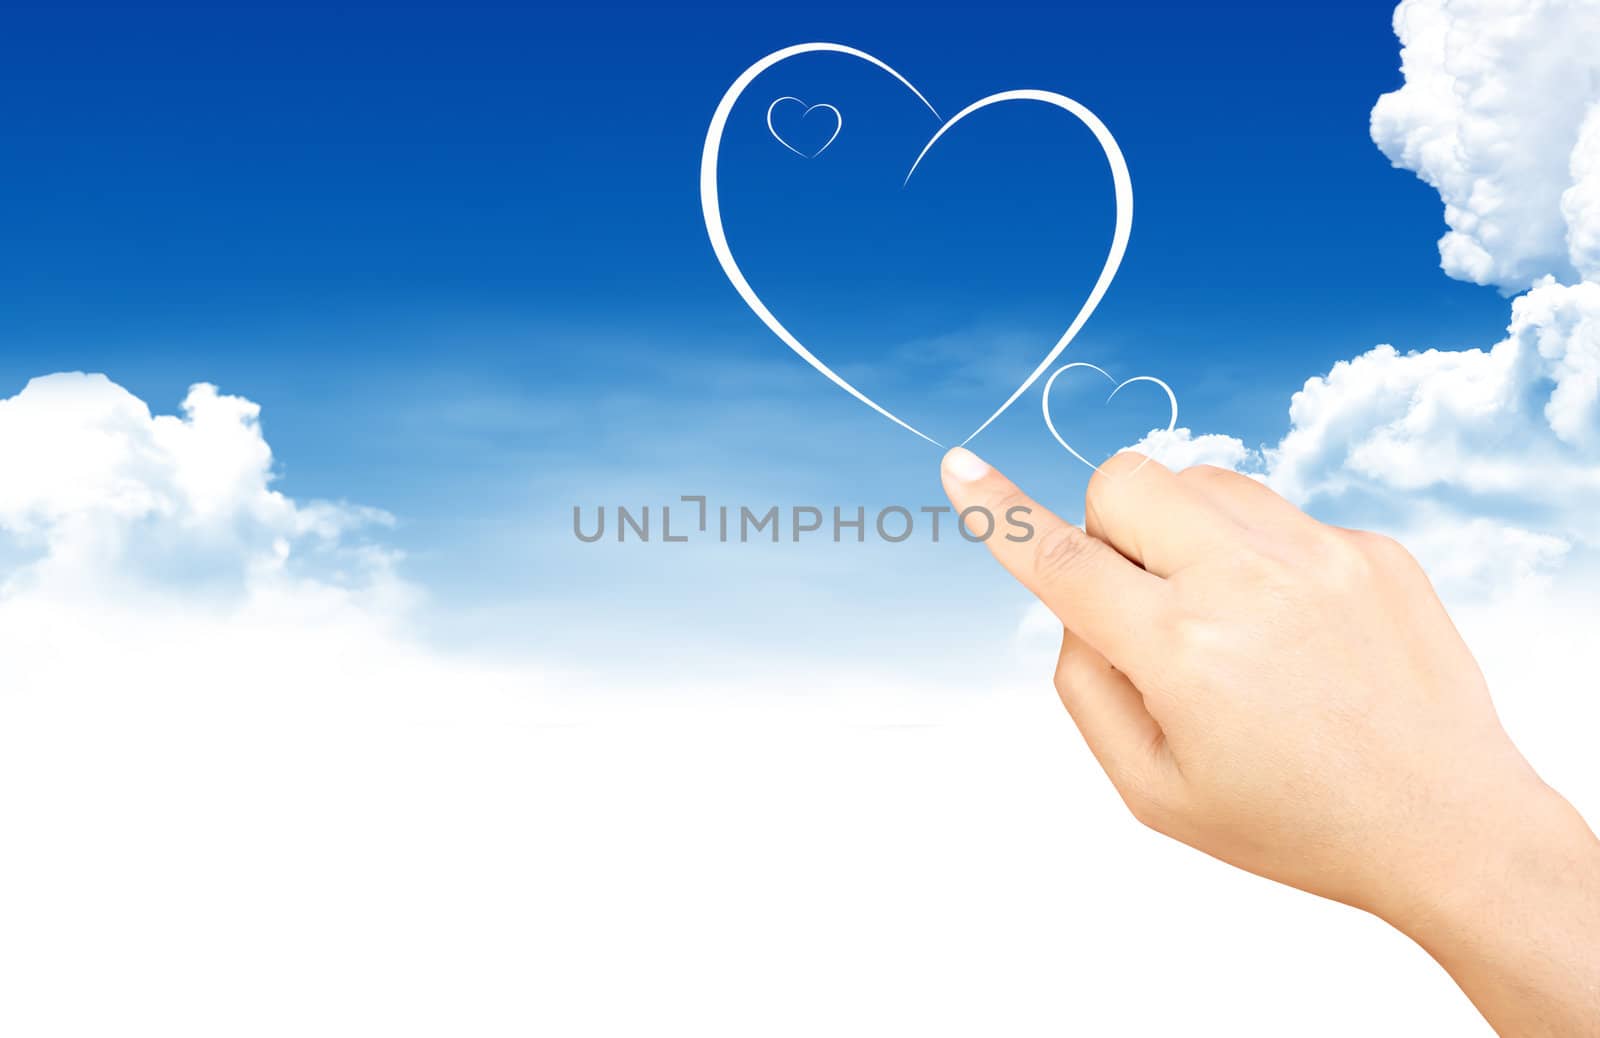 Hand holding heart shape cloud and blue sky